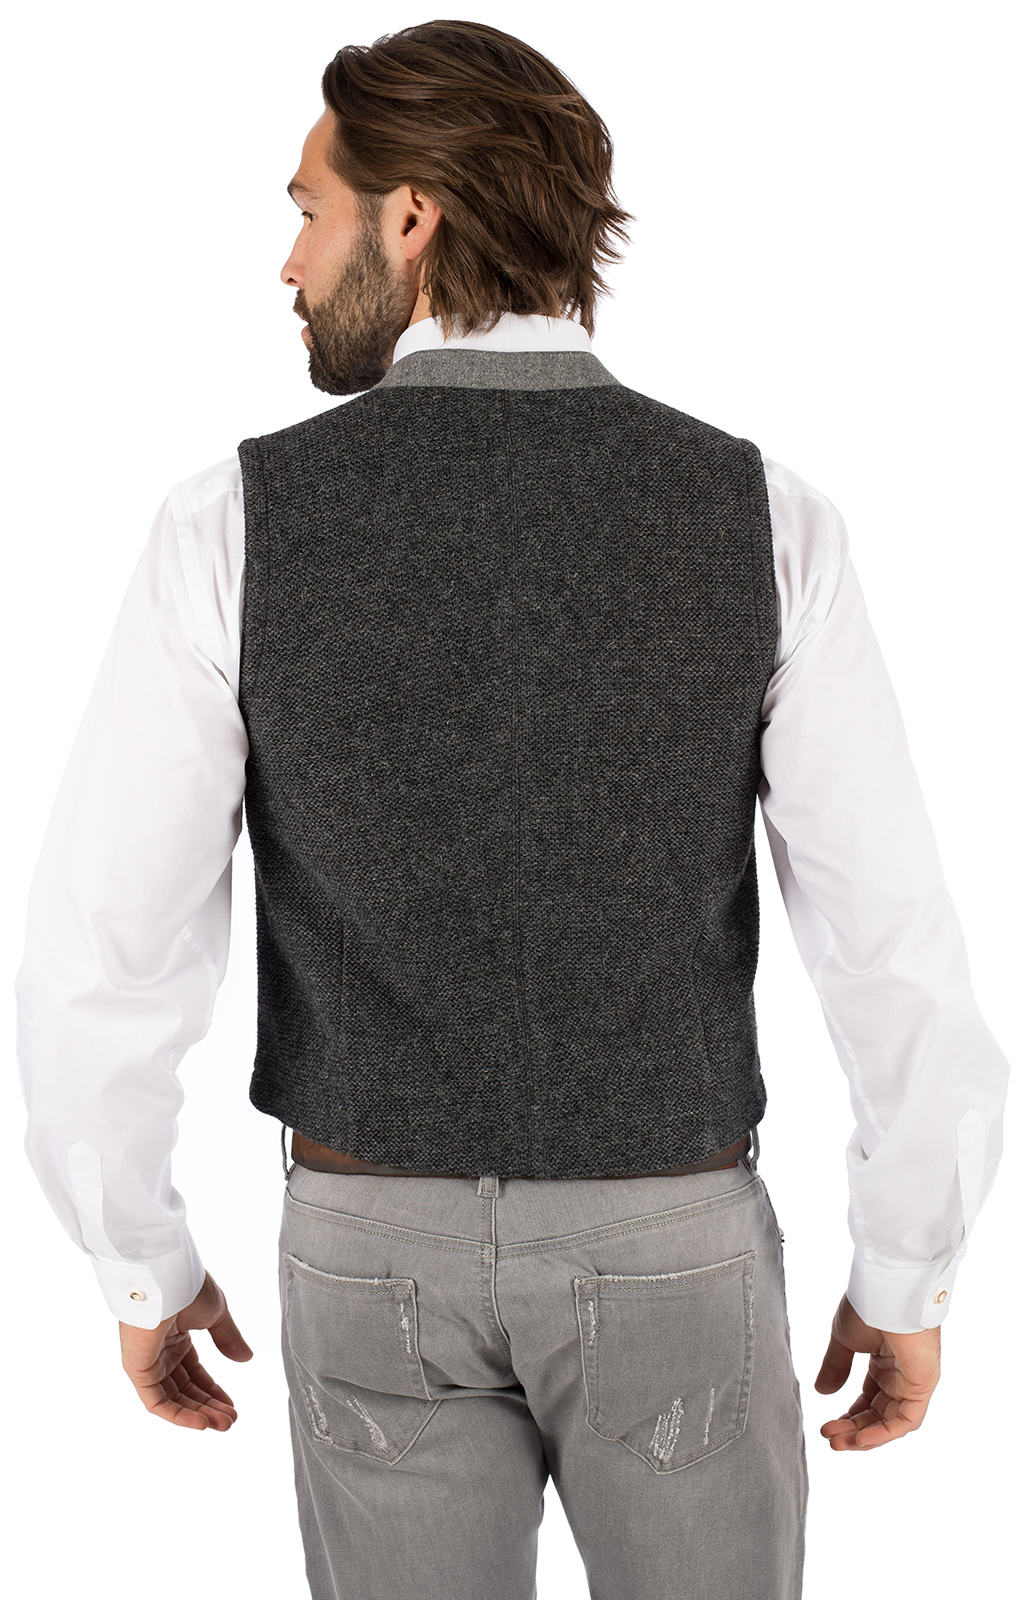 weitere Bilder von German knitted waistcoat KNALLER SW dark gray